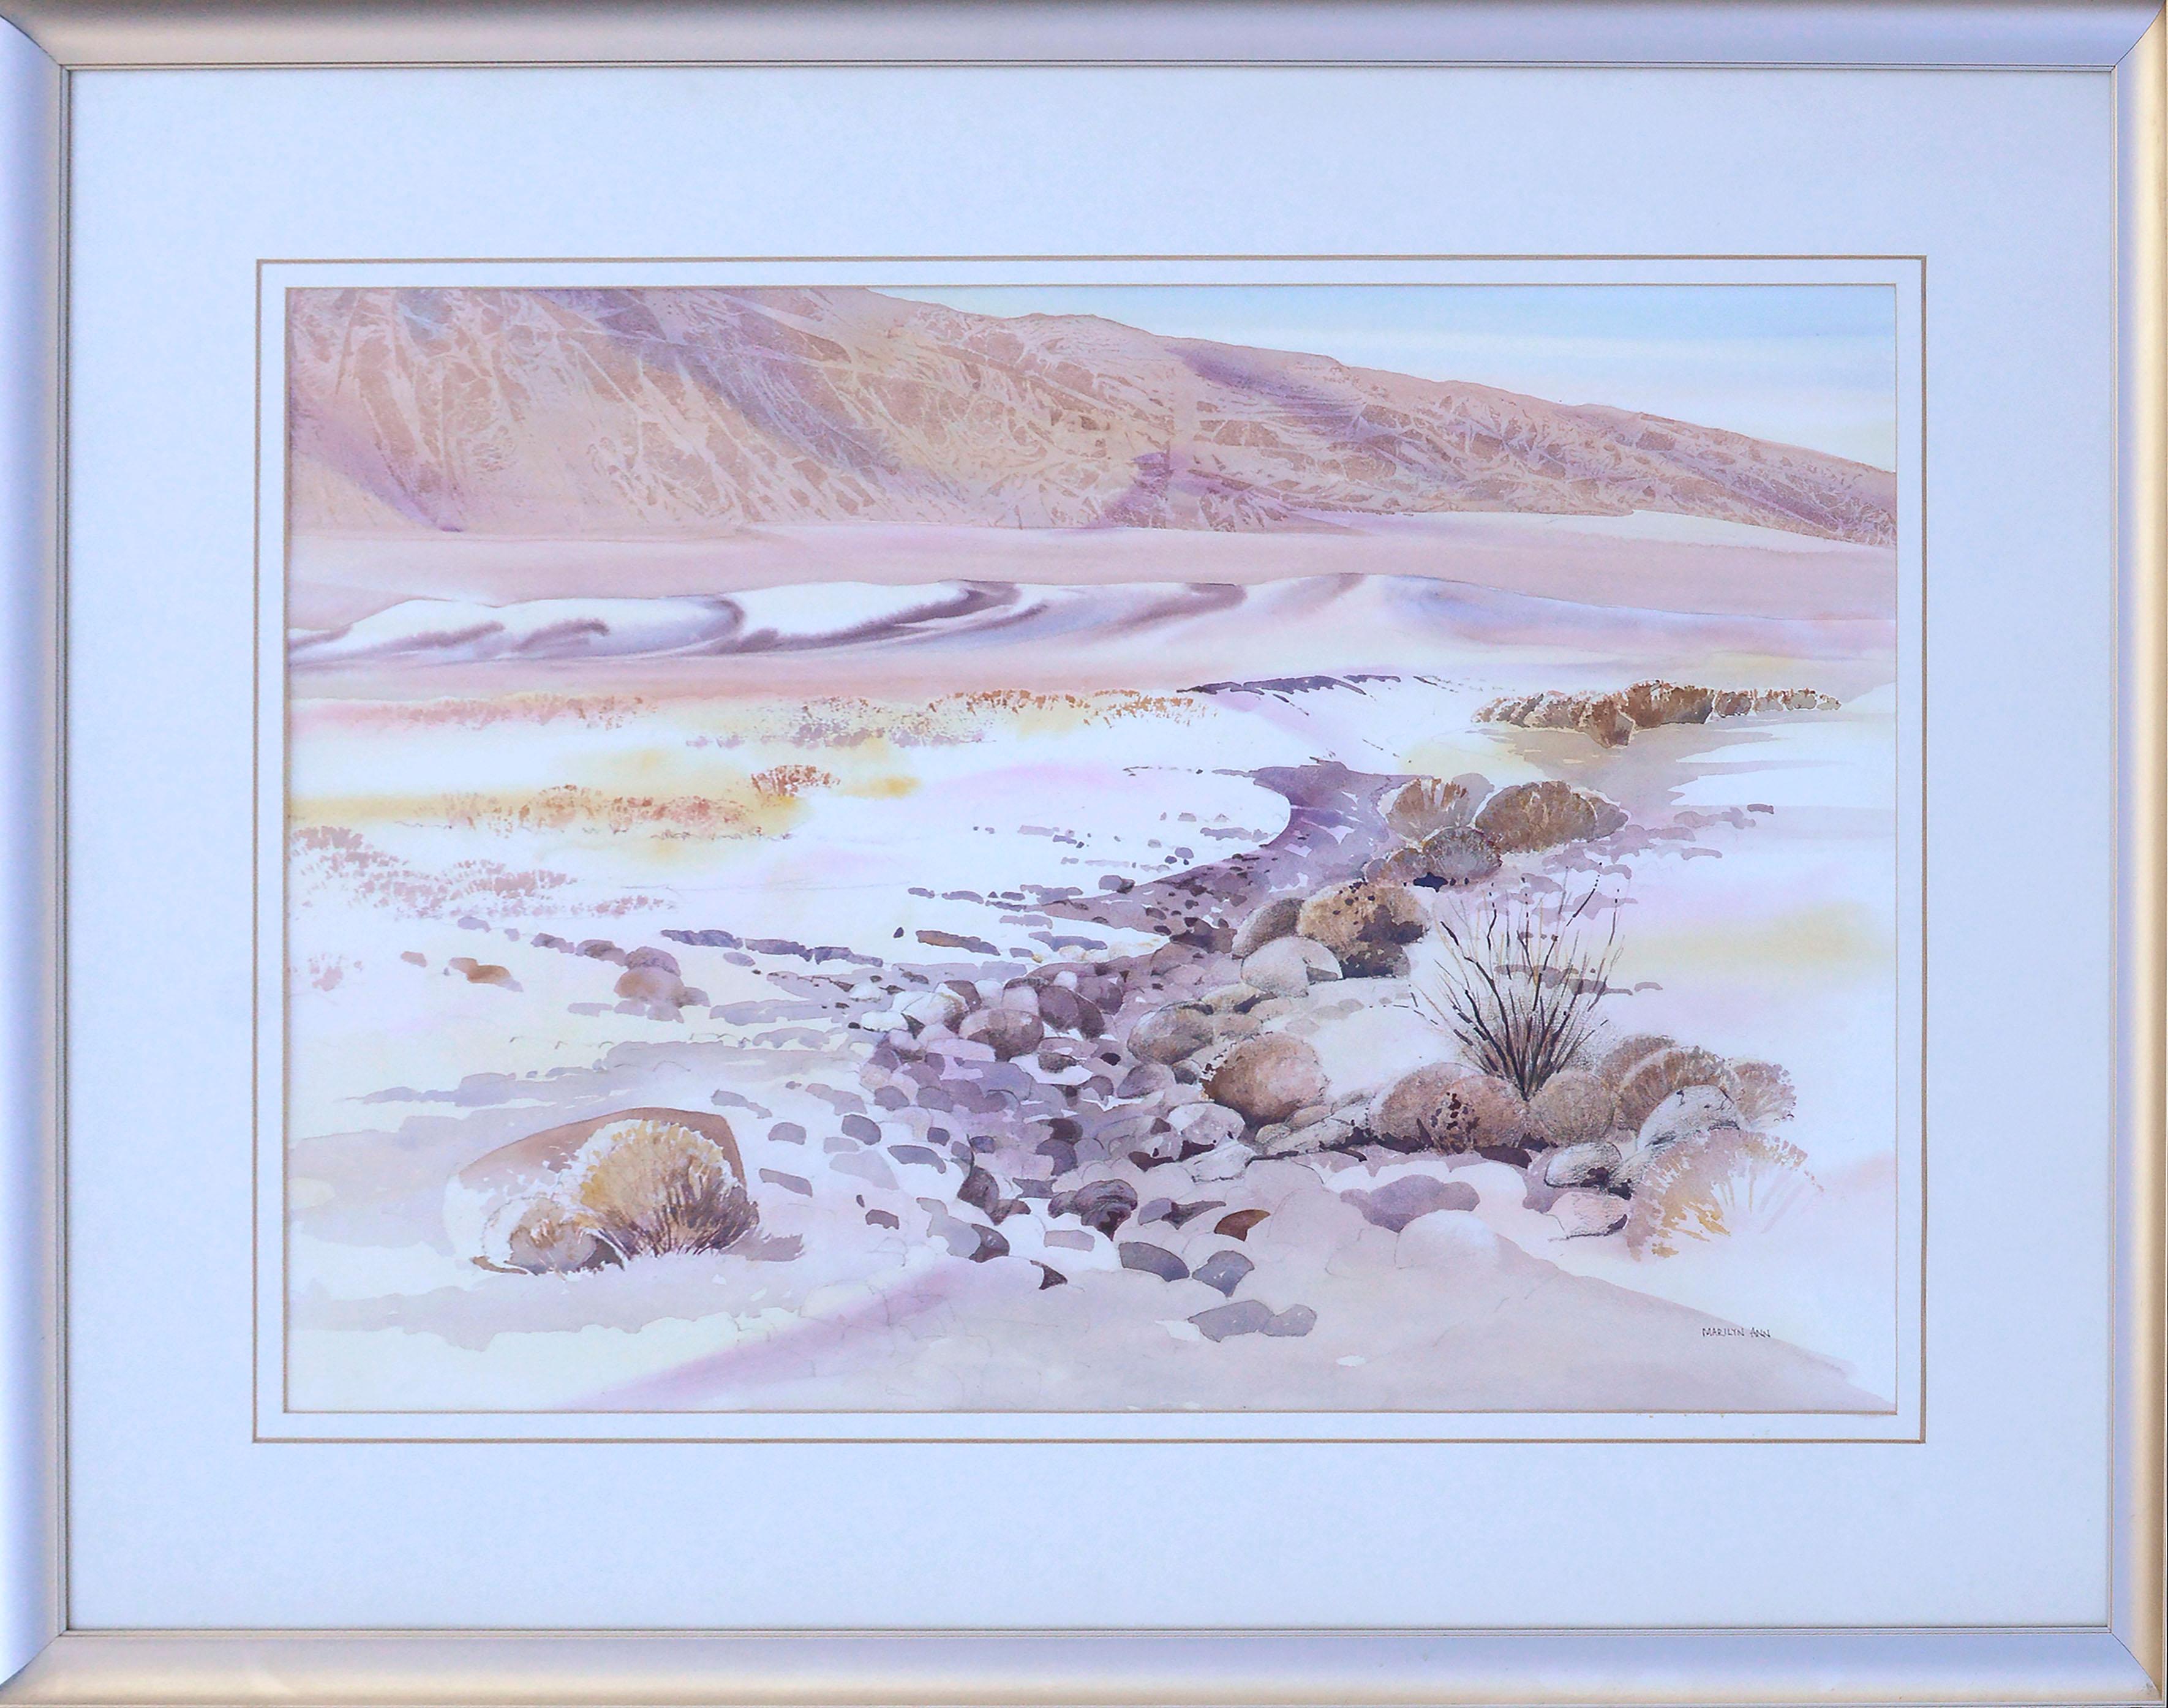 Marilyn Ann Deeds  Landscape Art - Rocky Arroyo Death Valley California Landscape Watercolor